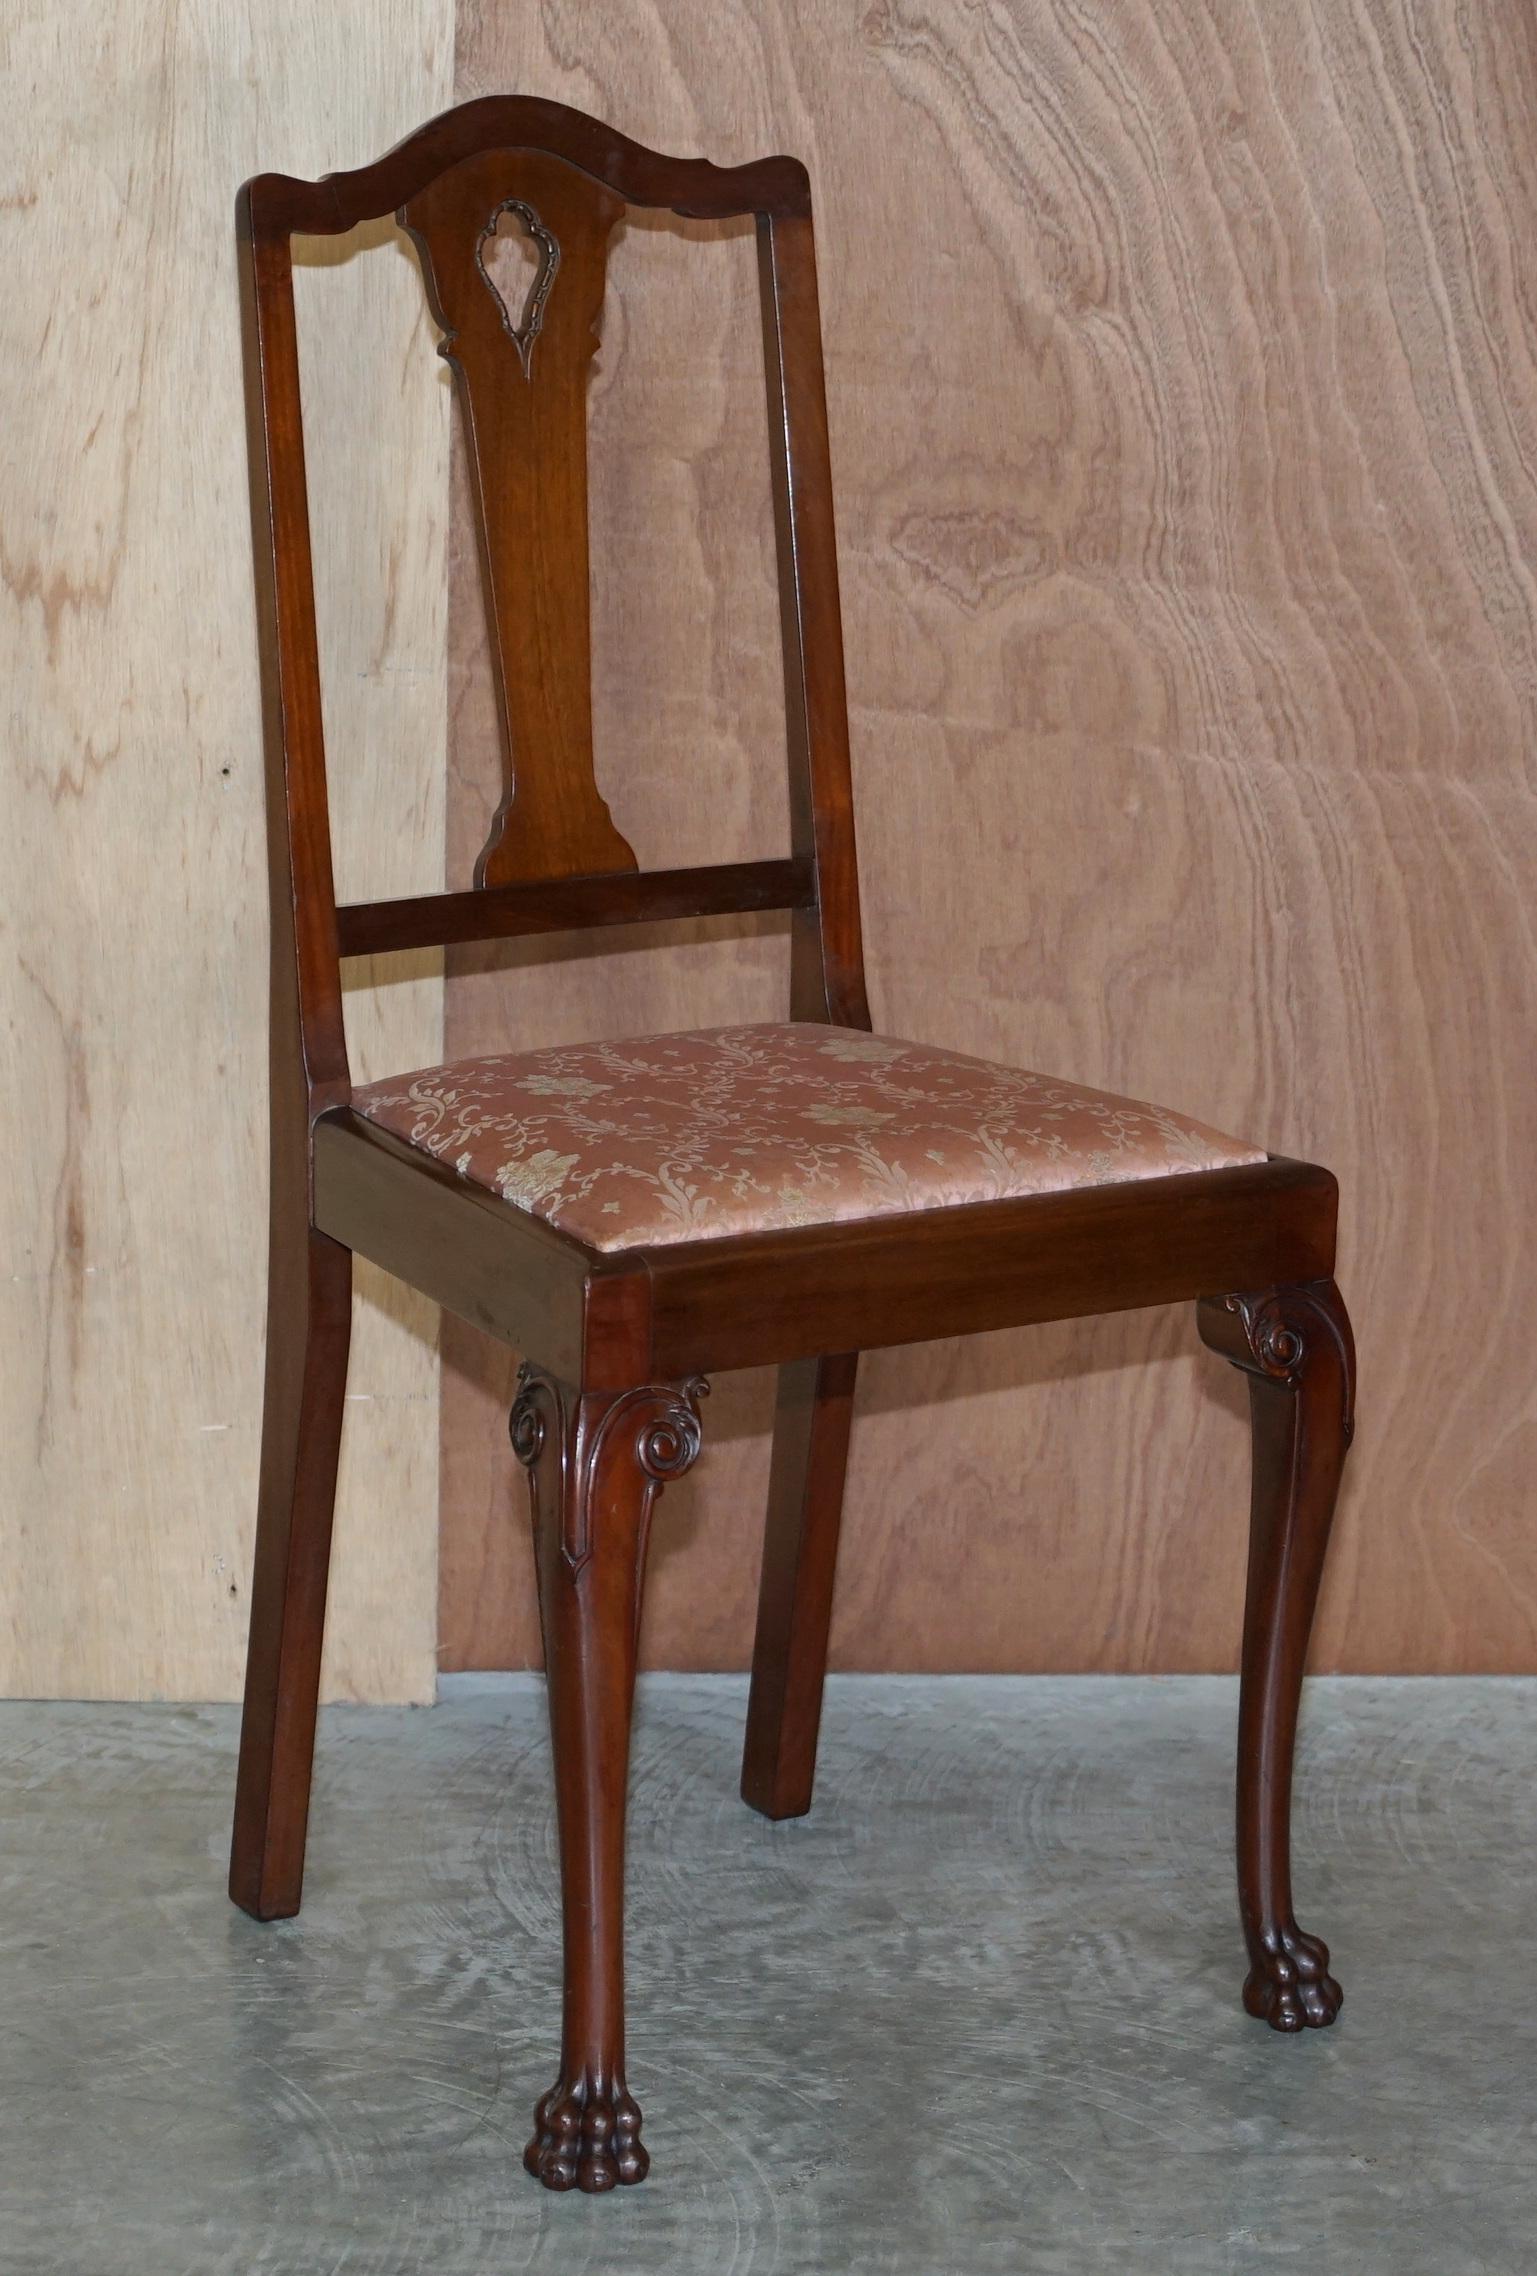 Wir freuen uns, dieses atemberaubende Paar spätviktorianischer Mahagoni-Stühle aus Honduras mit kunstvoll geschnitzten Löwentatzenfüßen zum Verkauf anzubieten

Diese Stühle sind von feinster Qualität, das Holz war extrem teuer neu und wurde von